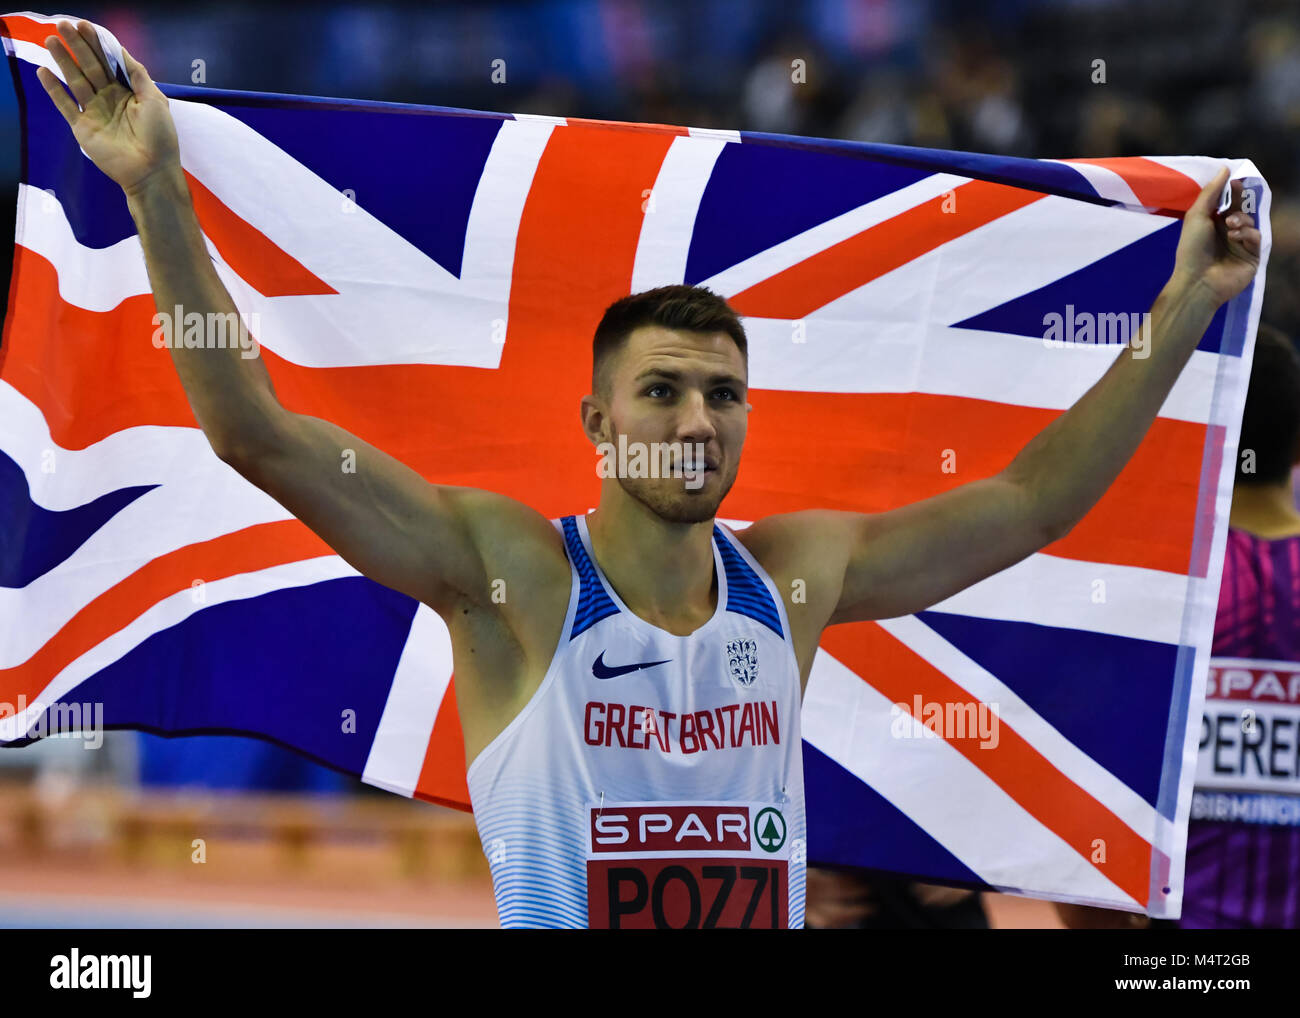 Andrew Pozzi ganó el hombre de 60 metros vallas durante la final de los campeonatos de atletismo británico SPAR interiores 2018 en el Arena de Birmingham, el sábado 17 de febrero de 2018. BIRMINGHAM, Inglaterra. Crédito: G Taka Taka Crédito: Wu Wu/Alamy Live News Foto de stock